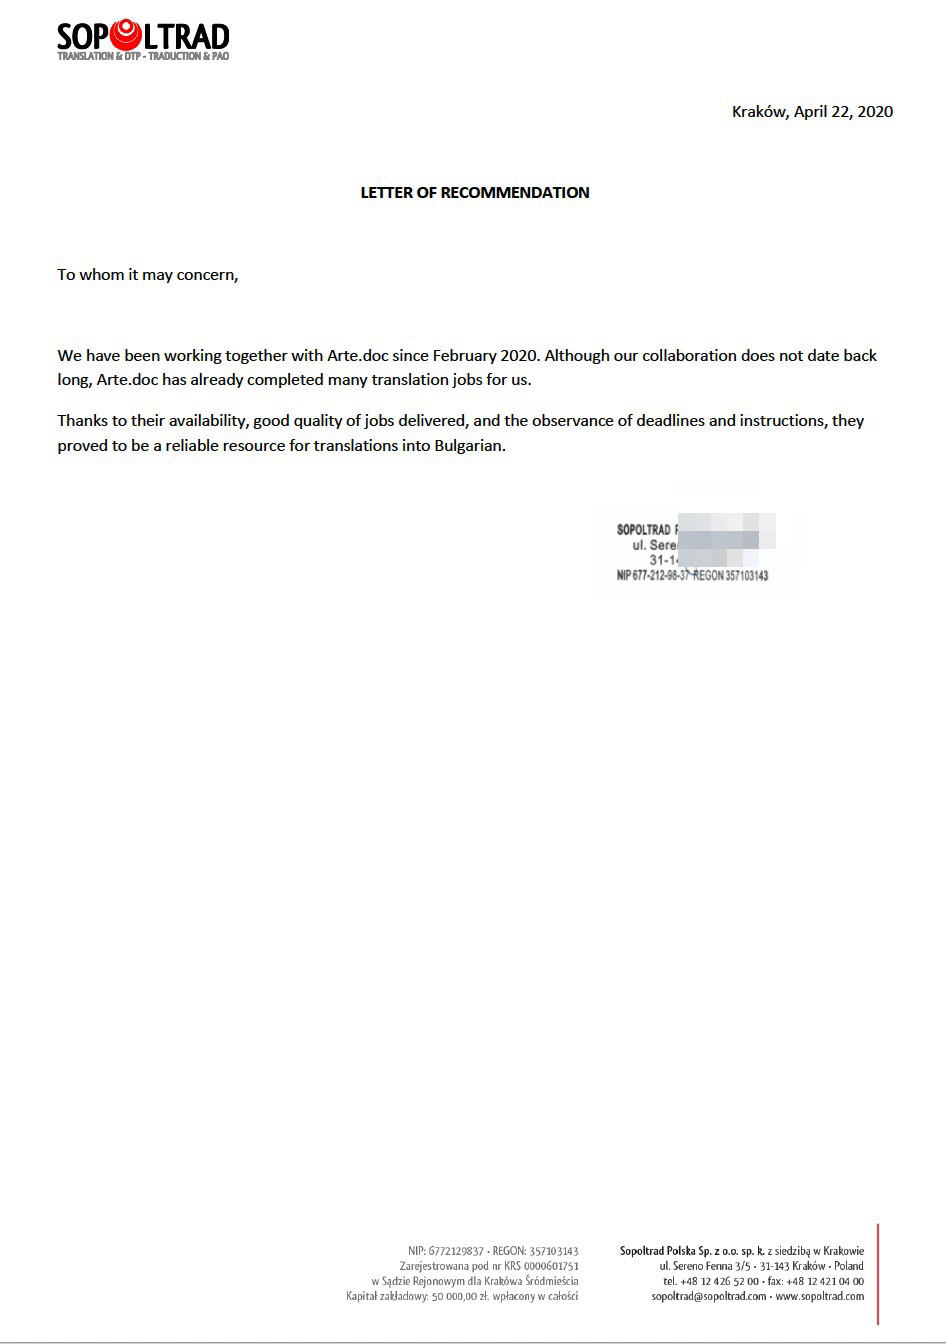 Sopoltrad - letter of recommendation for Bulgarian translation agency Arte.doc. Препоръка за агенция за преводи Арте.Док